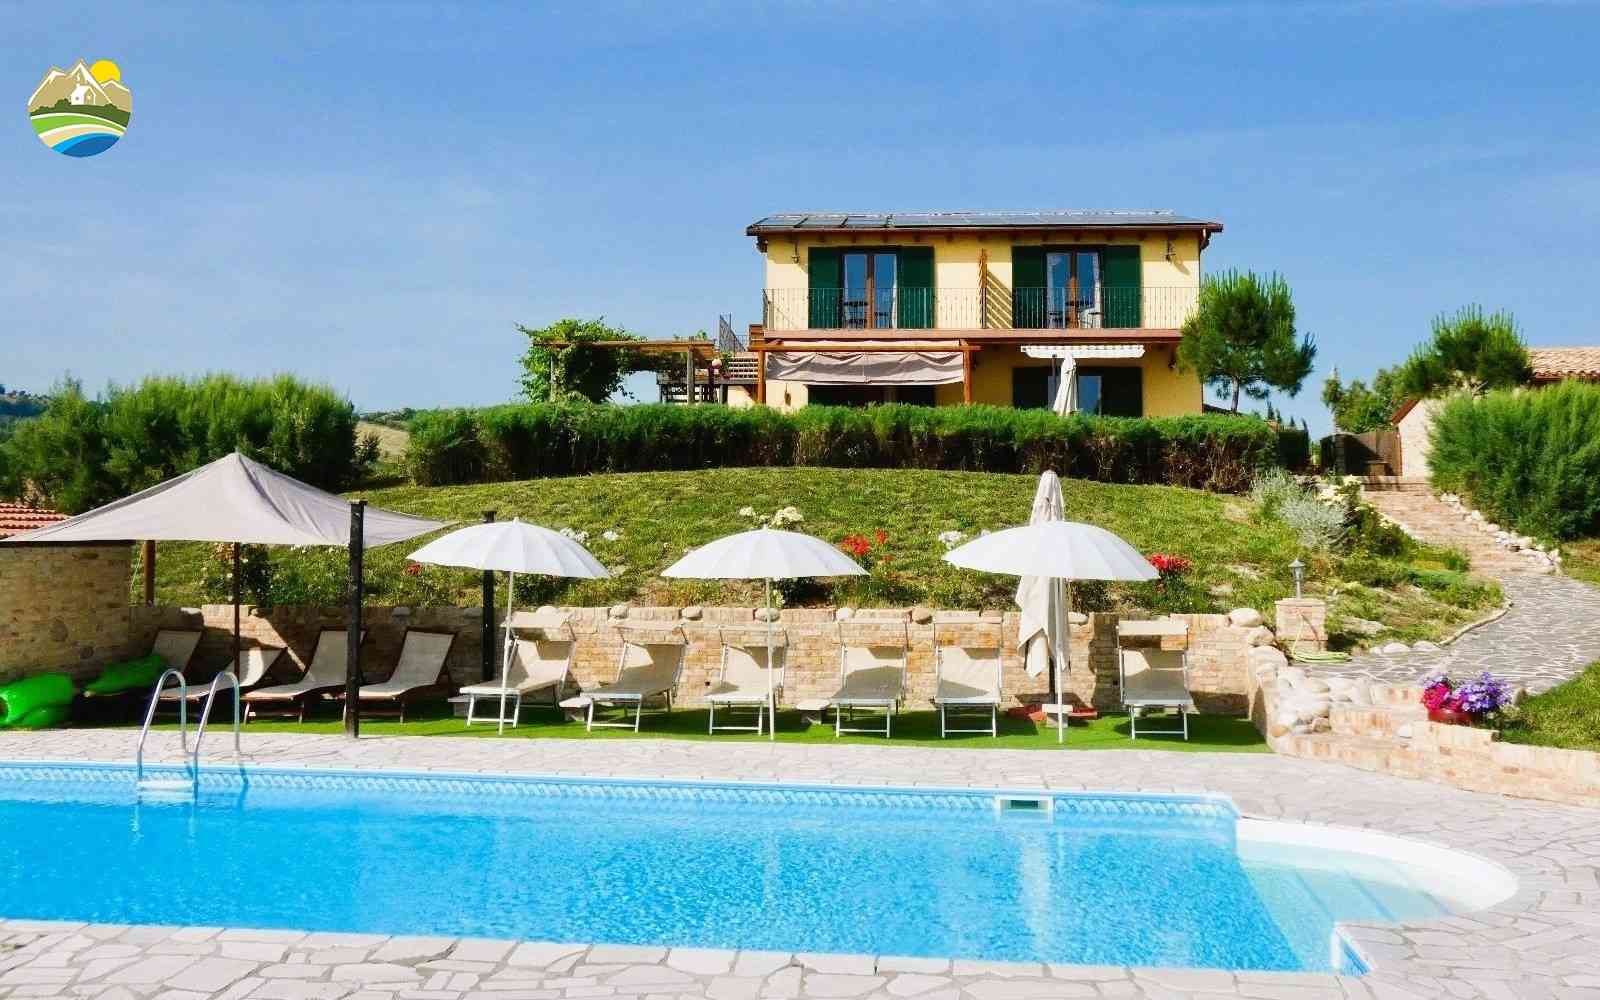 Villa Villa in vendita Bellante (TE), Villa Il Frutteto - Bellante - EUR 509.983 1130 small